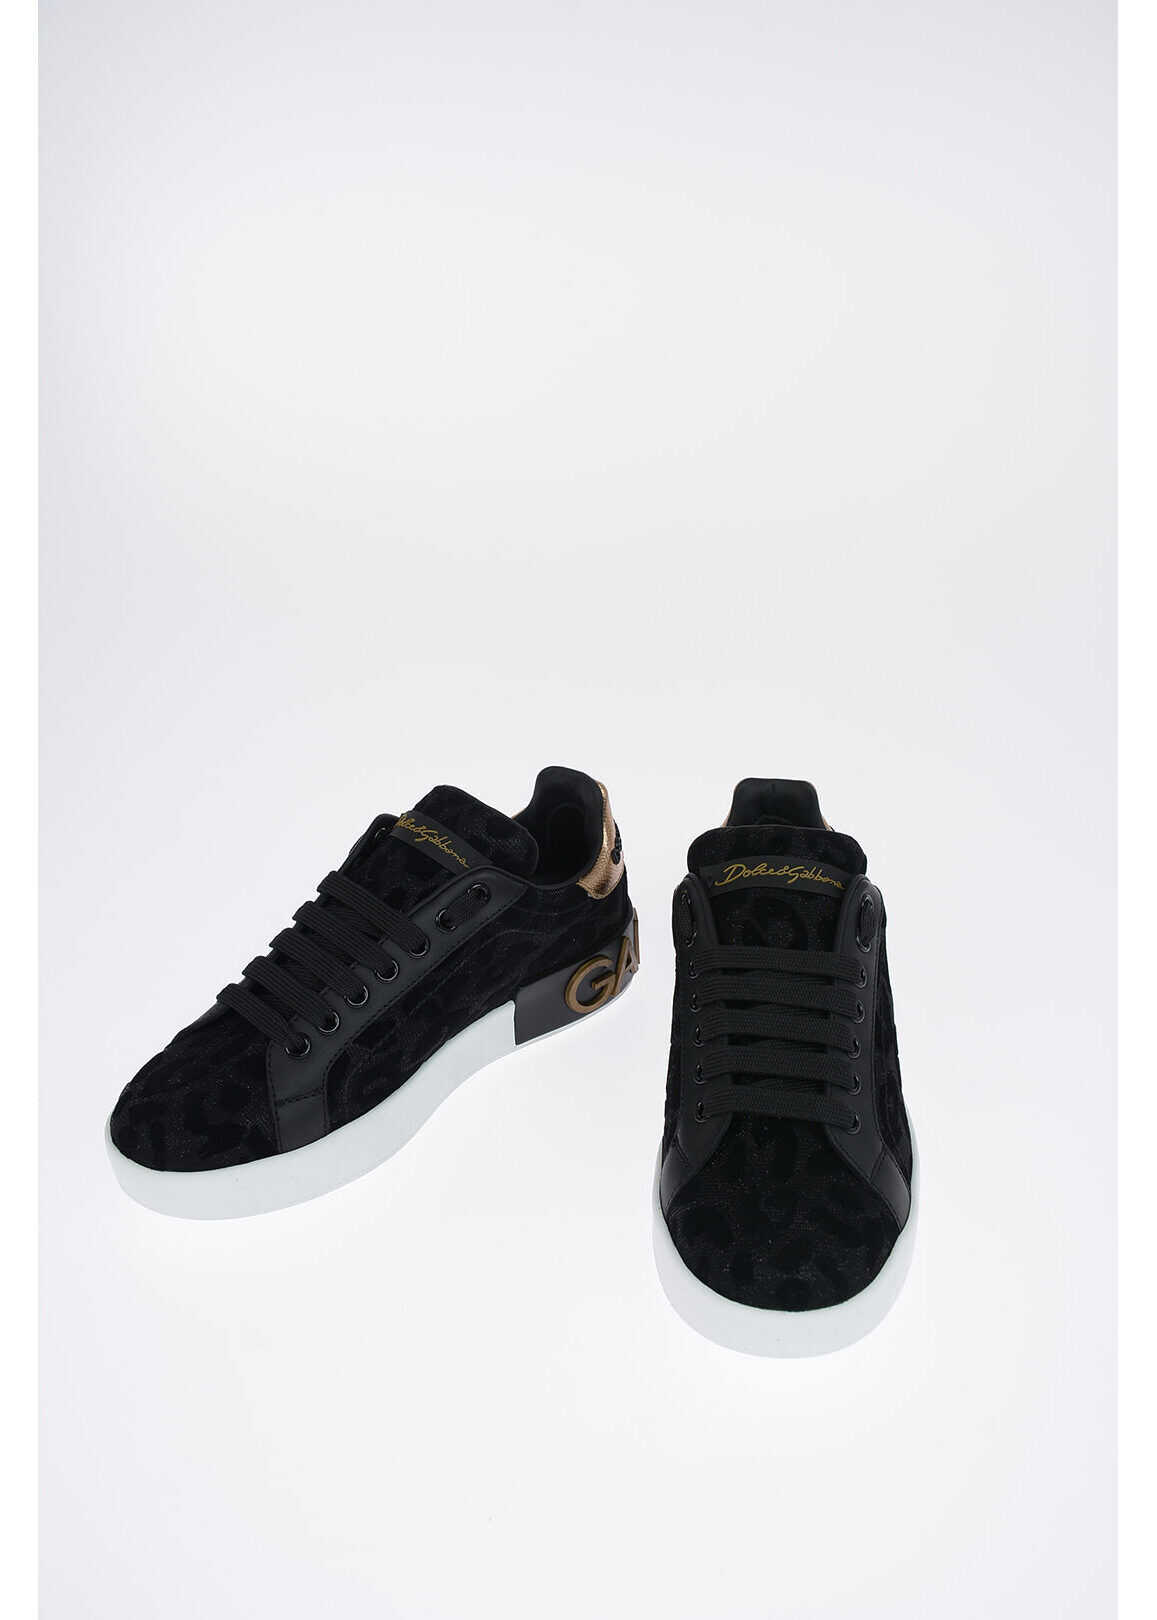 Dolce & Gabbana leather PORTOFINO sneakers BLACK